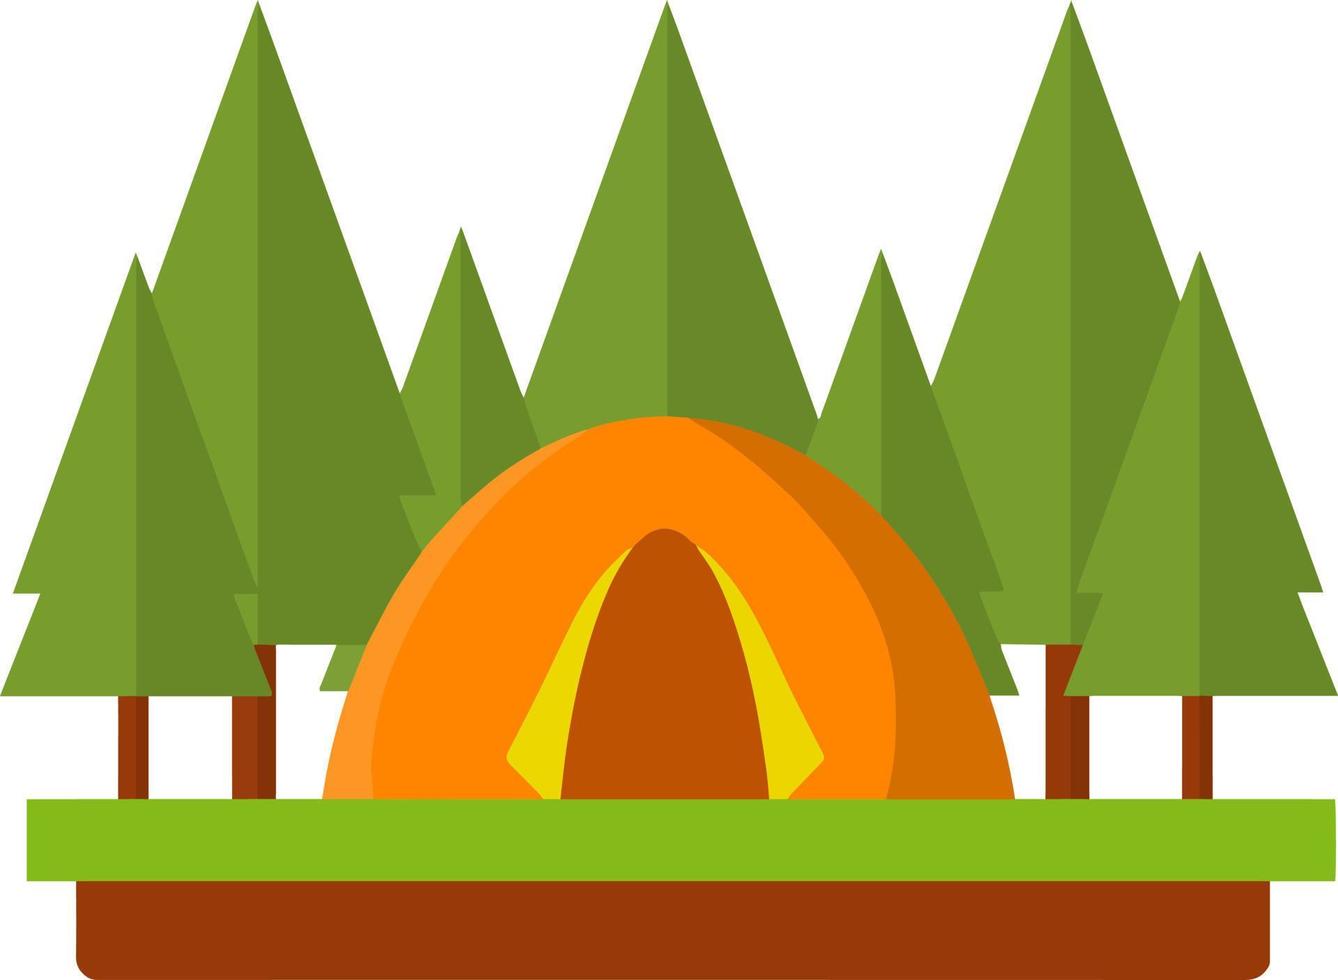 carpa naranja en el bosque. actividad al aire libre. campamento y caminata. fogata y descanso en el bosque. viaje a la naturaleza. ilustración plana de dibujos animados vector